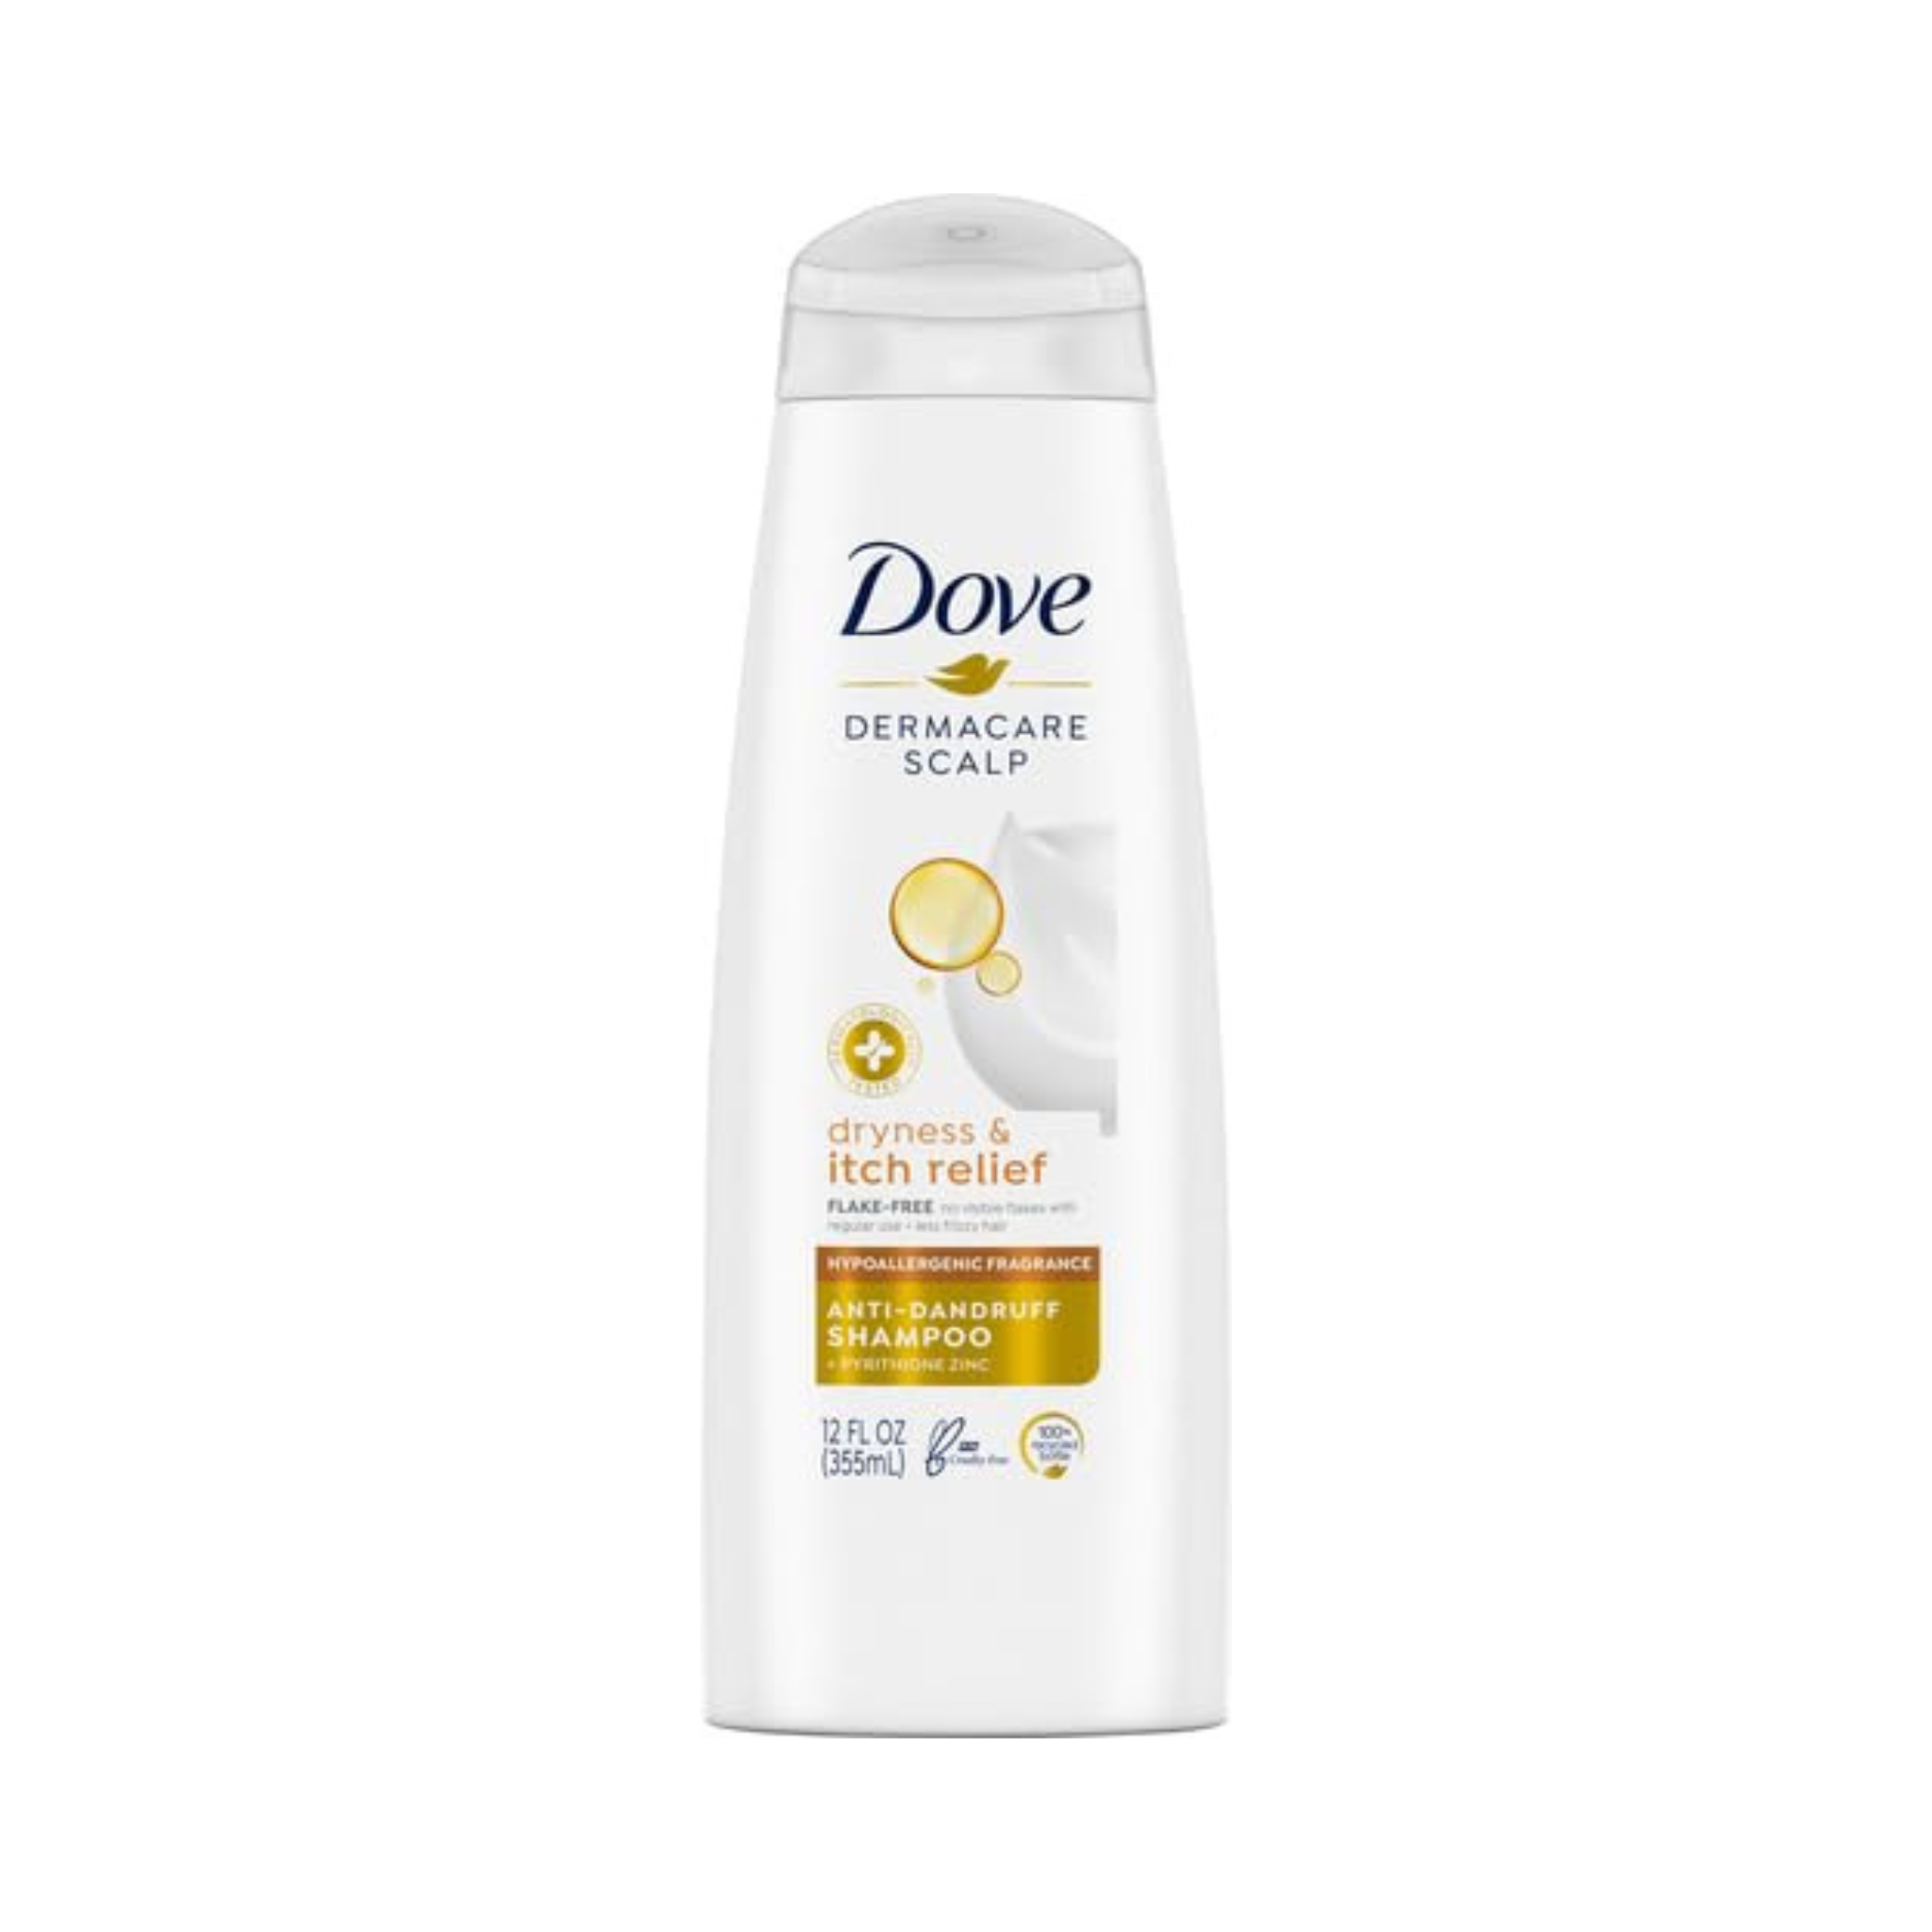 Dove DermaCare Anti Dandruff Shampoo, 12 oz